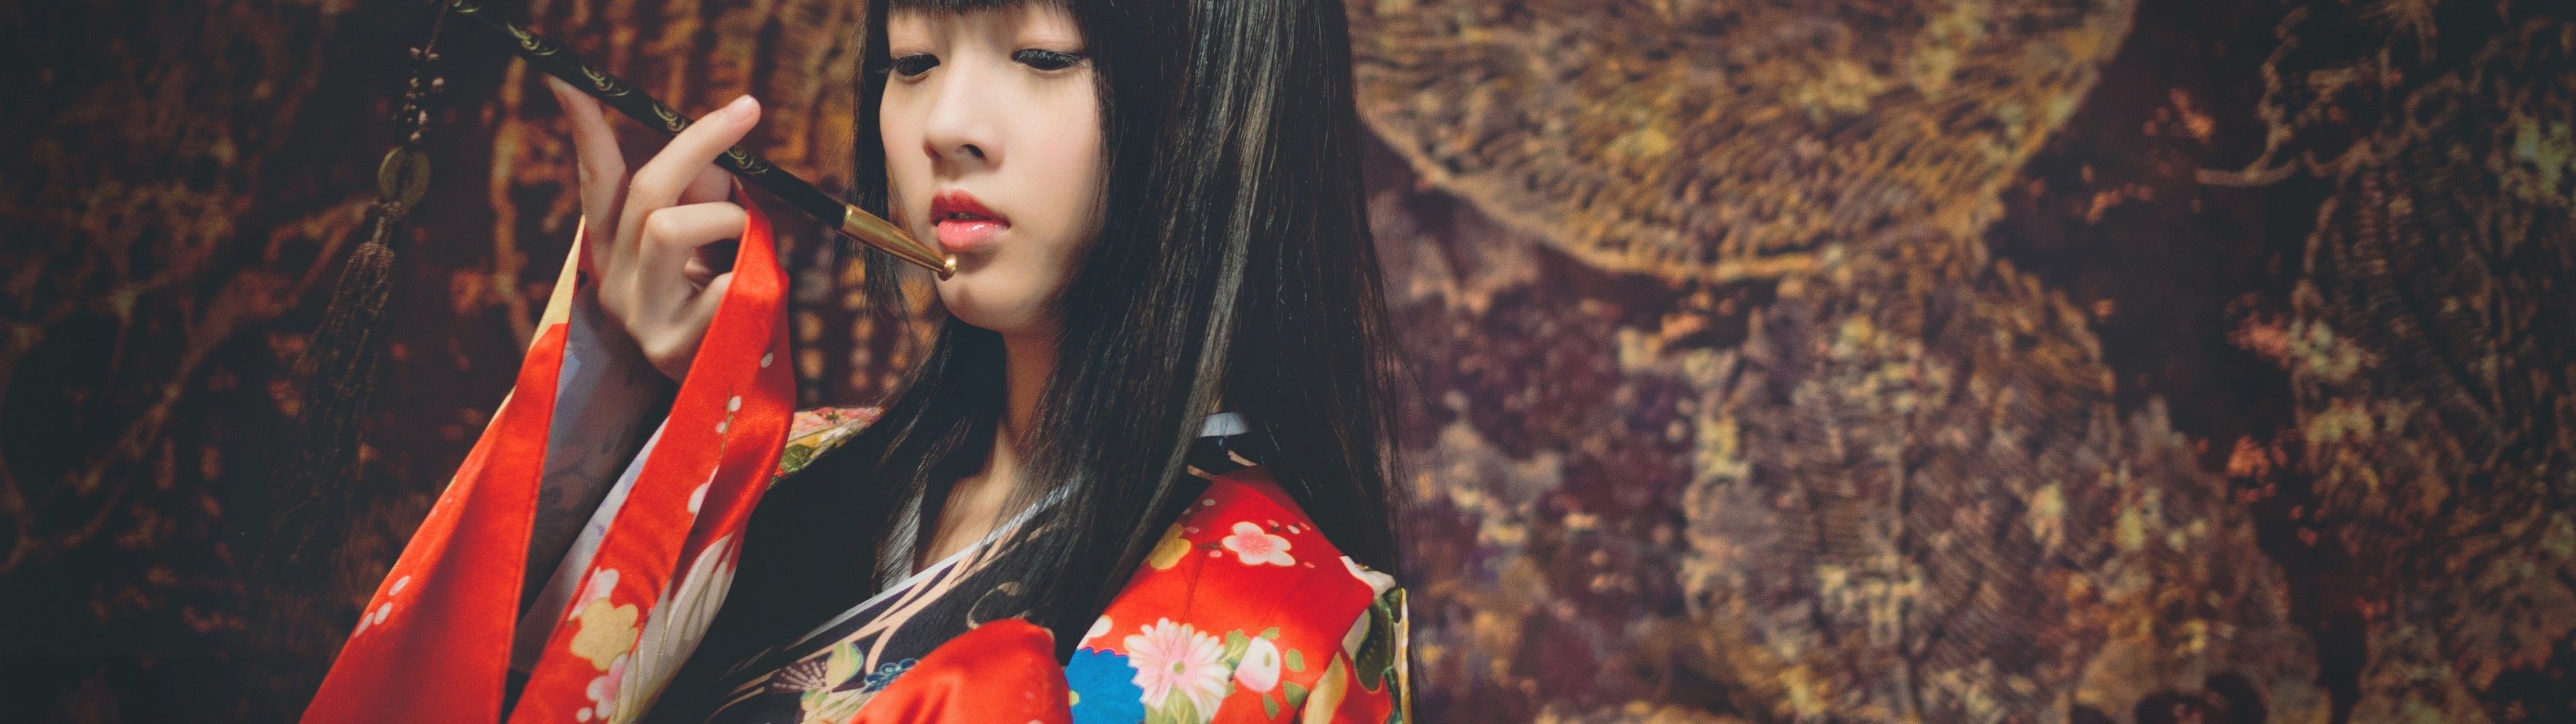 Download 3840x1080 Japanese Women, Kimono, Black Hair, Pink Lipstick, Open Mouth, Asian, Model Wallpaper